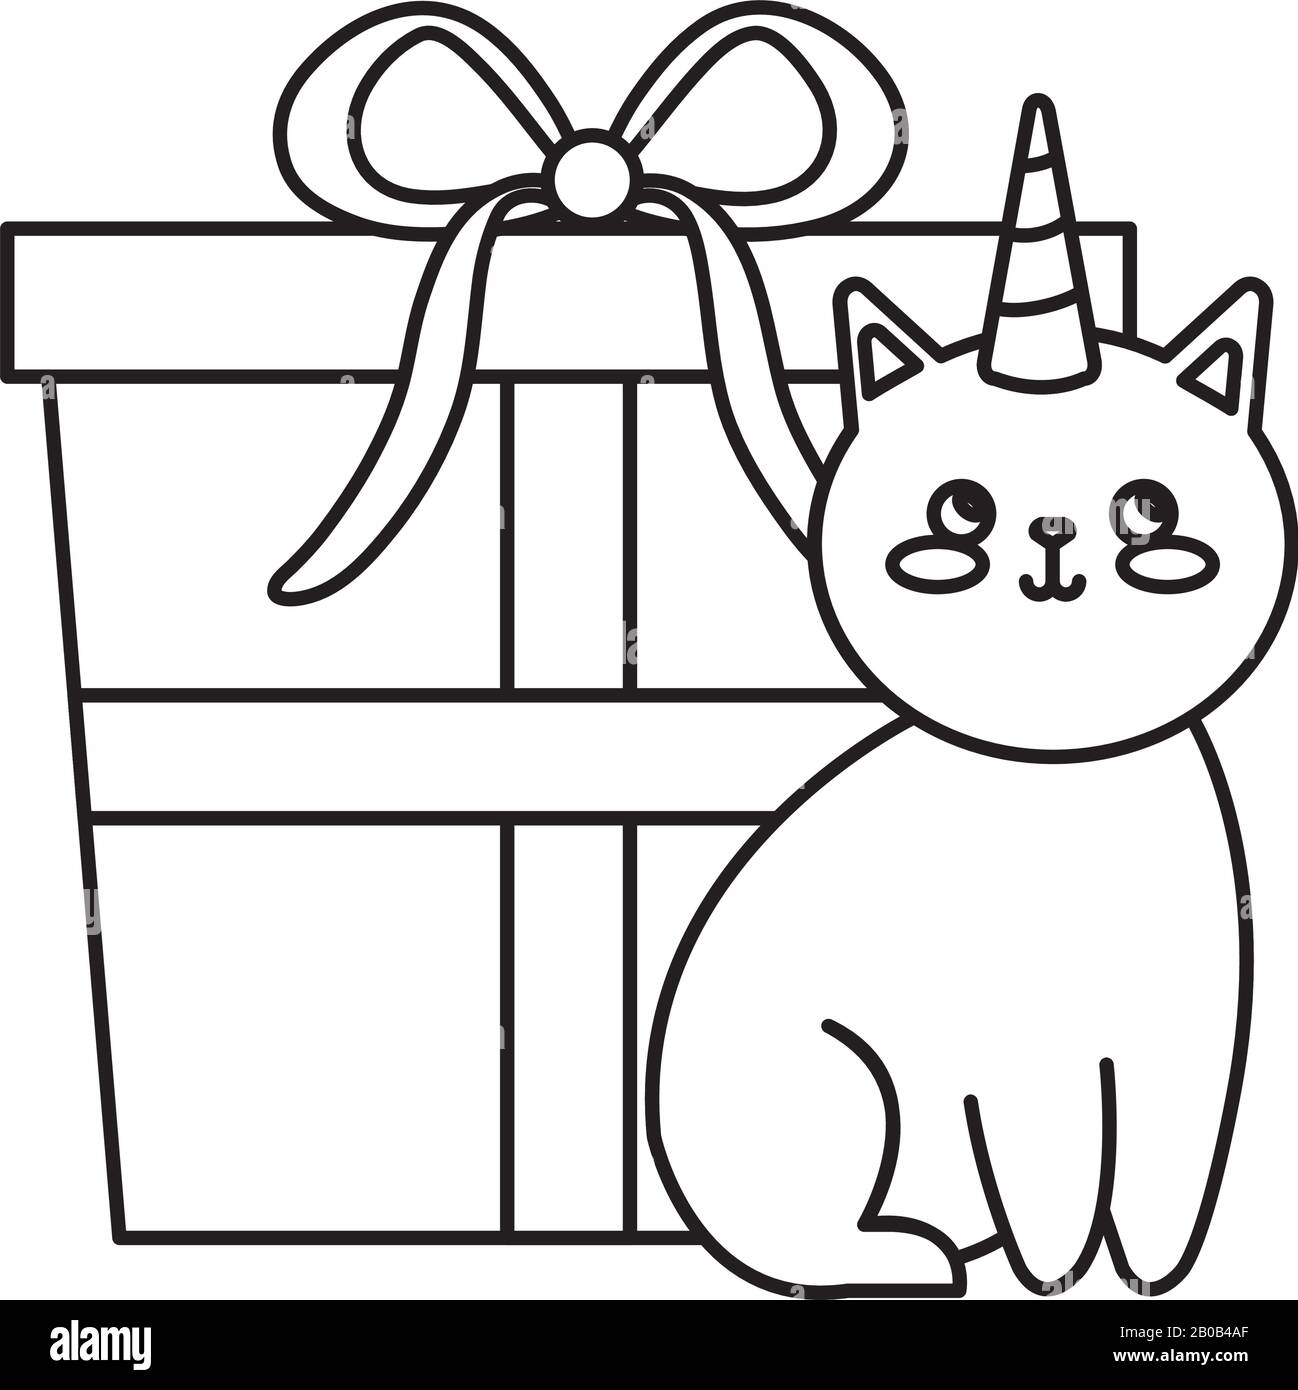 cute gatto unicorno con icona scatola regalo Illustrazione Vettoriale